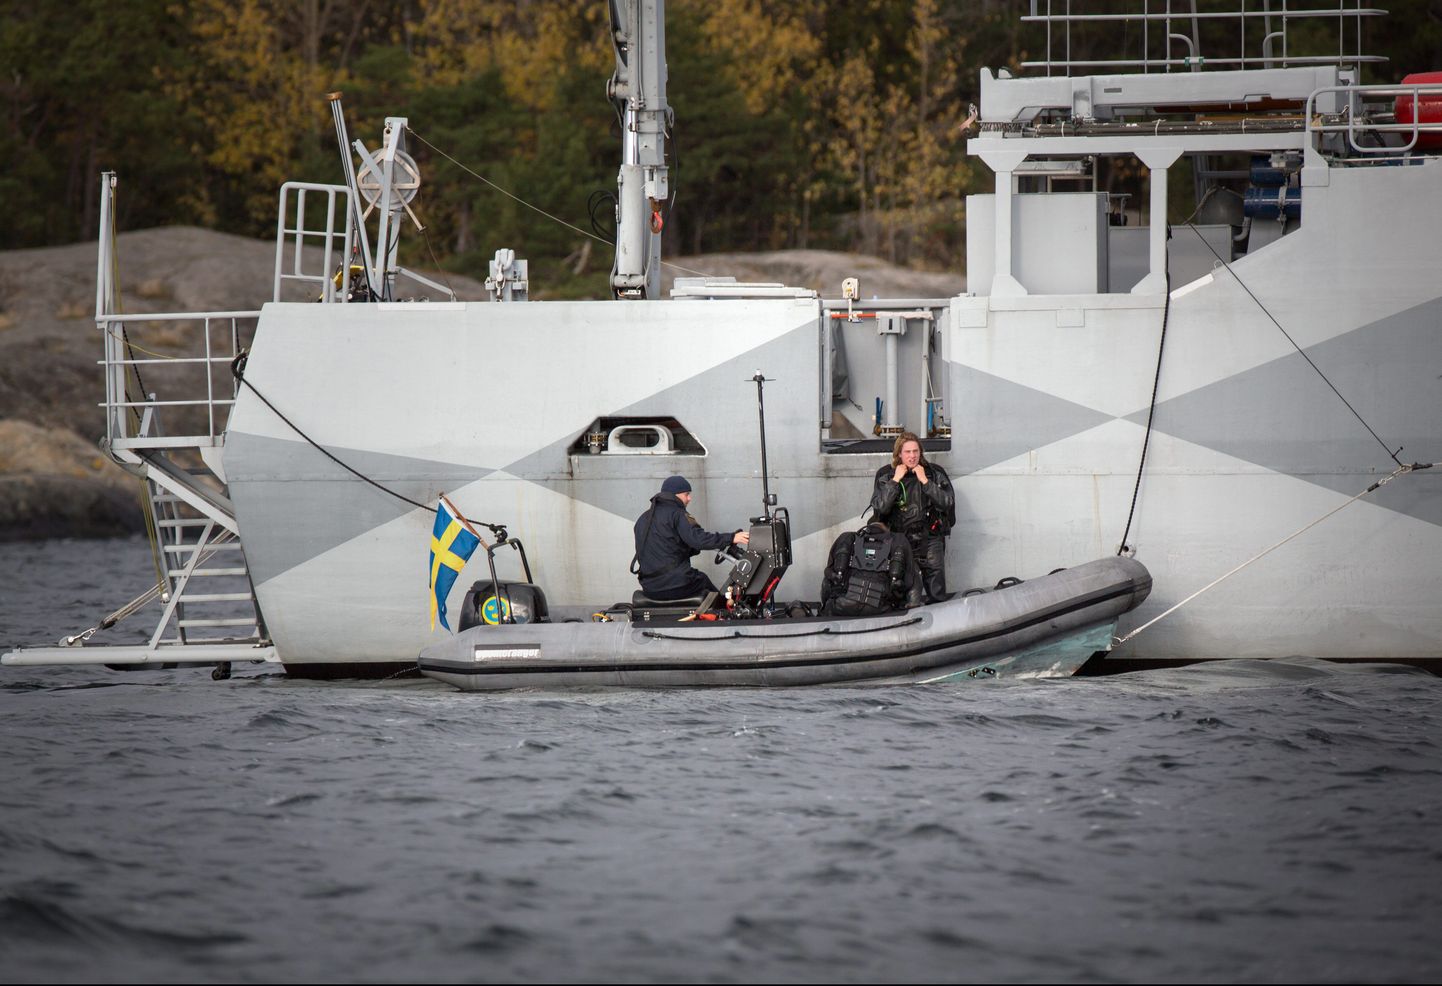 Stockholmi saarestis toimunud operatsioonist võtsid osa ka mereväe tuukrid.